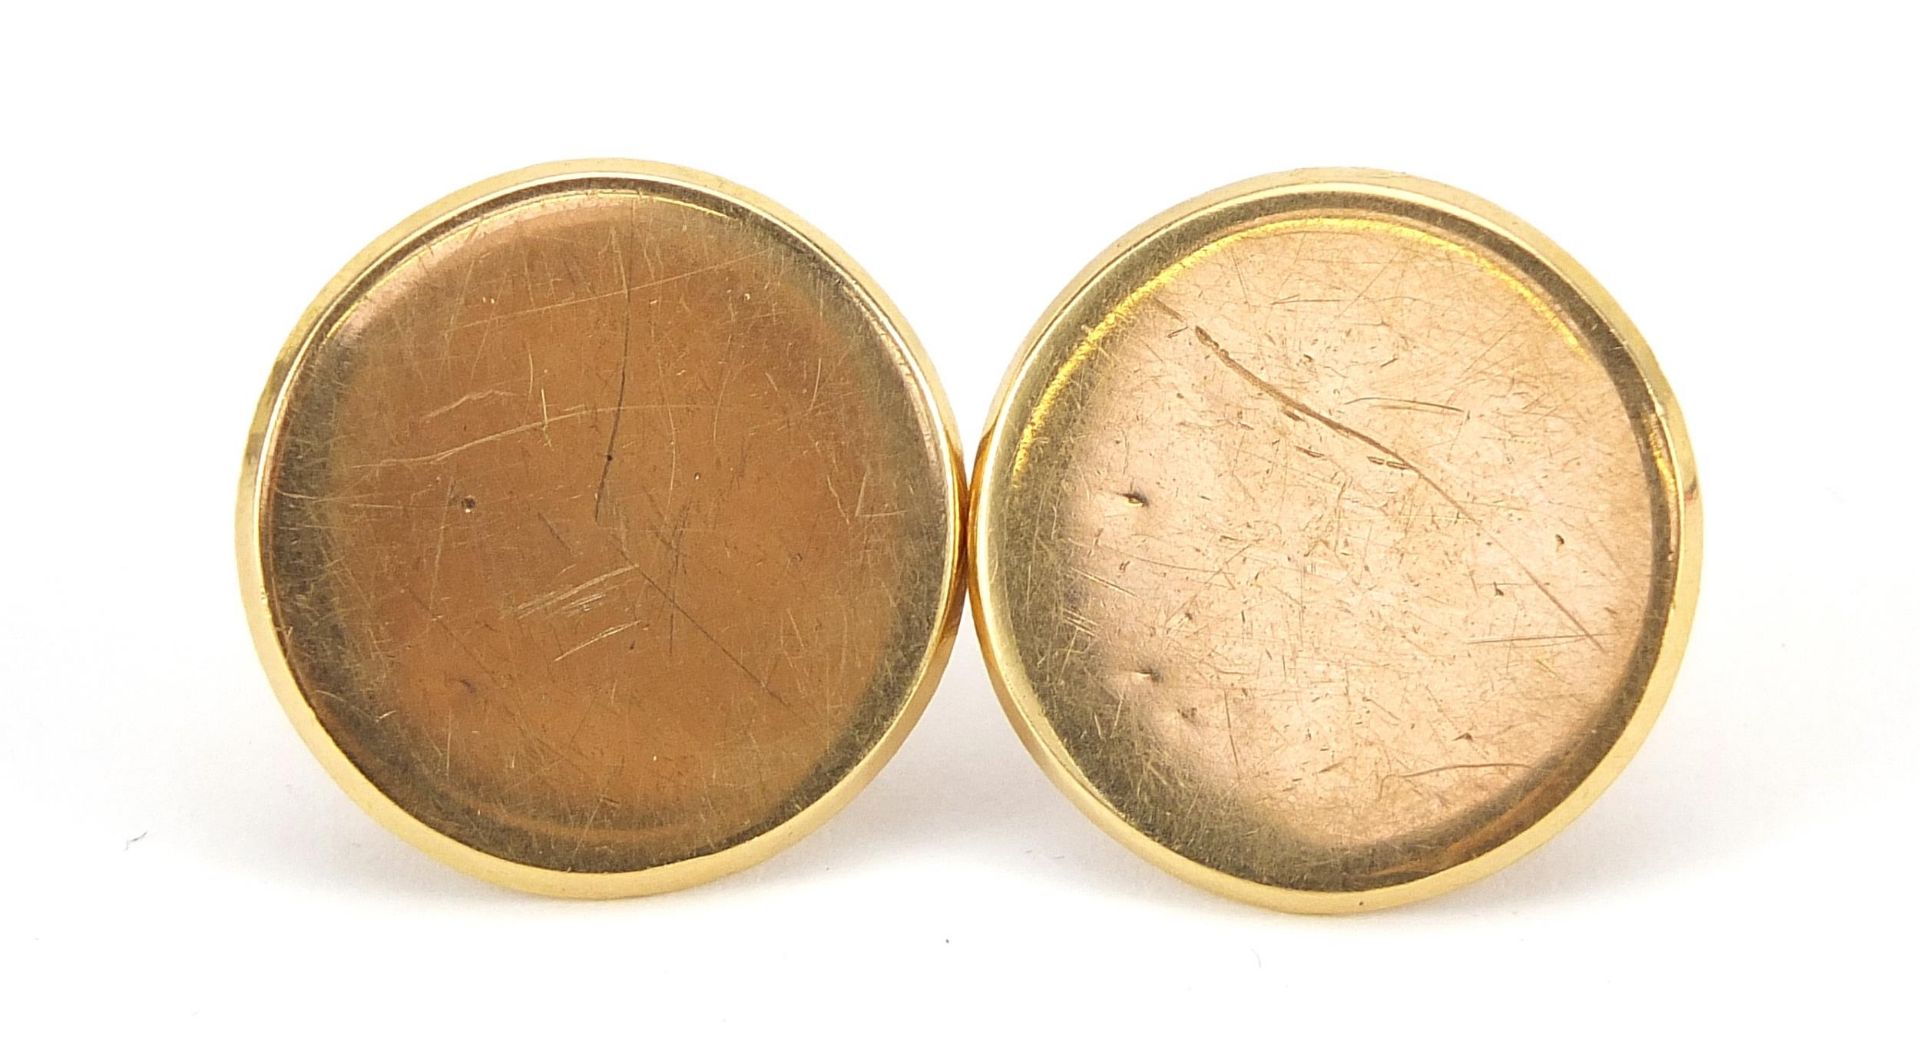 Pair of 18ct gold studs, 2.2cm in diameter, 18.3g